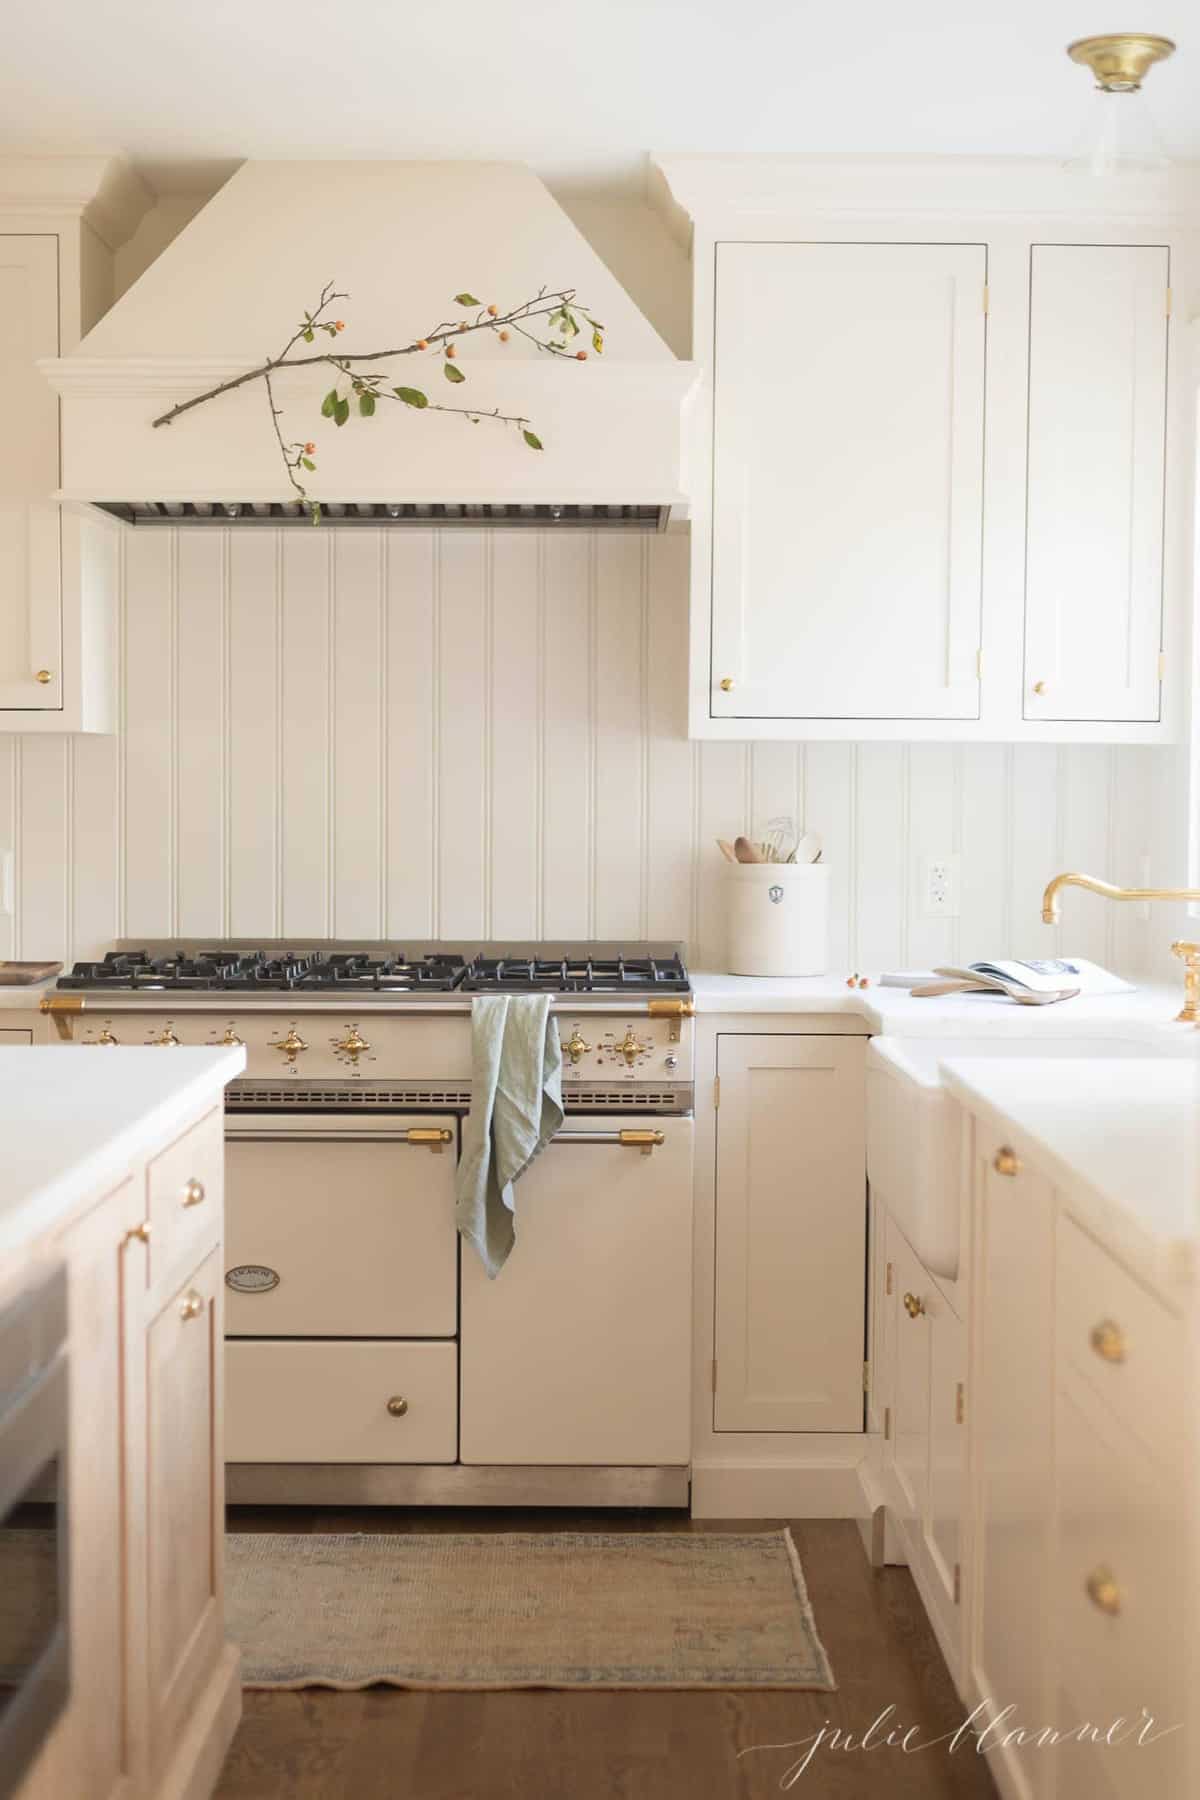 Minimalist kitchen design featuring cream cabinets and range.